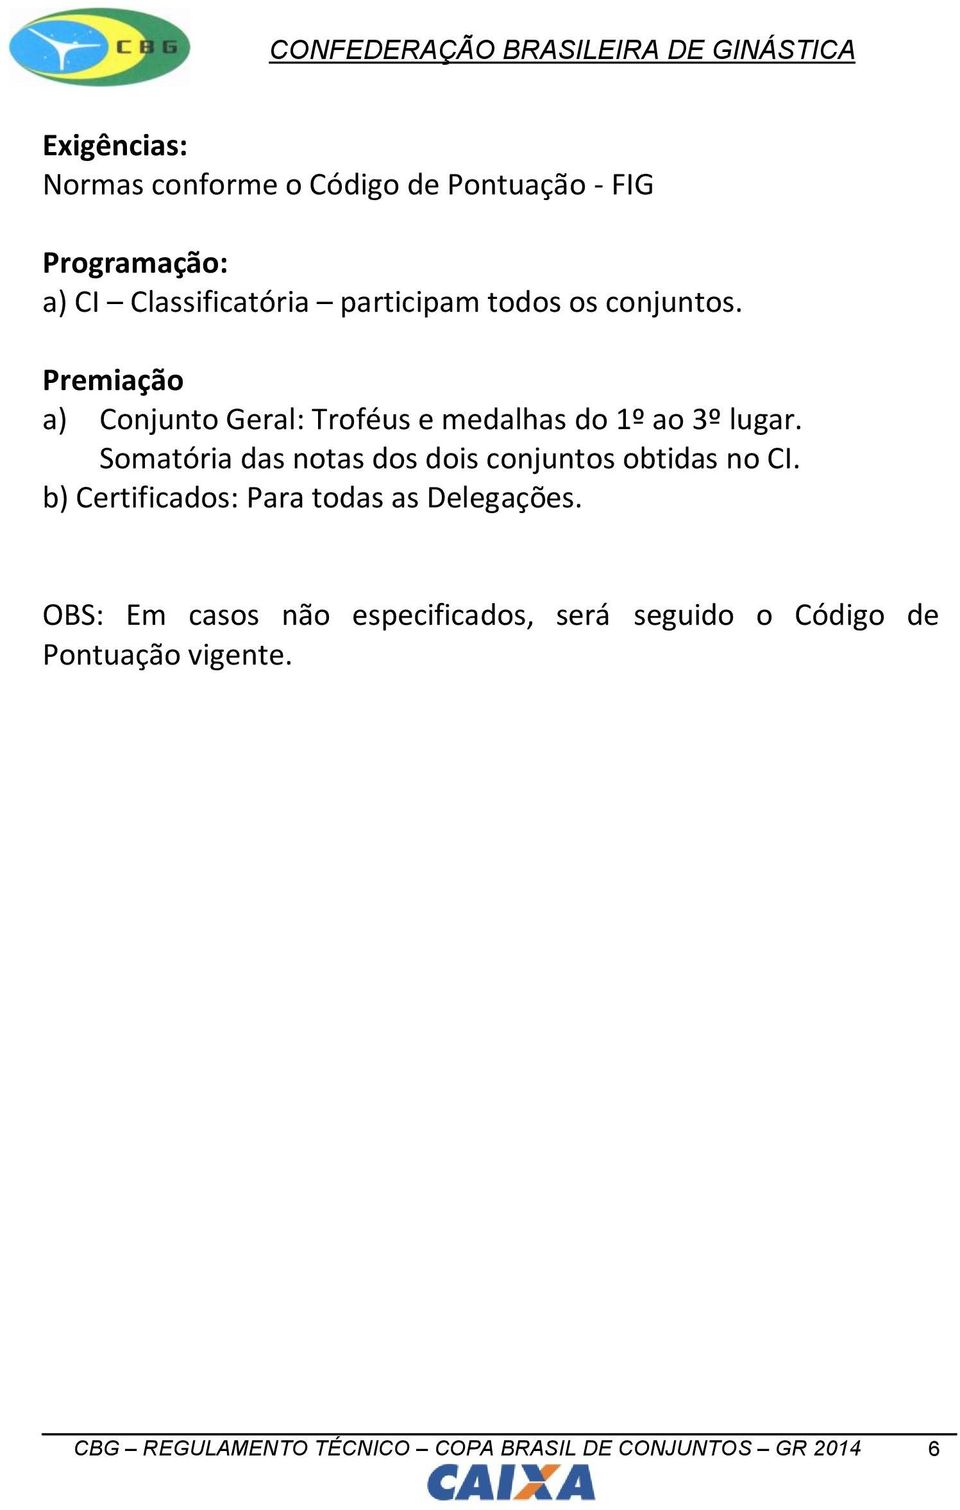 Somatória das notas dos dois conjuntos obtidas no CI. b) Certificados: Para todas as Delegações.